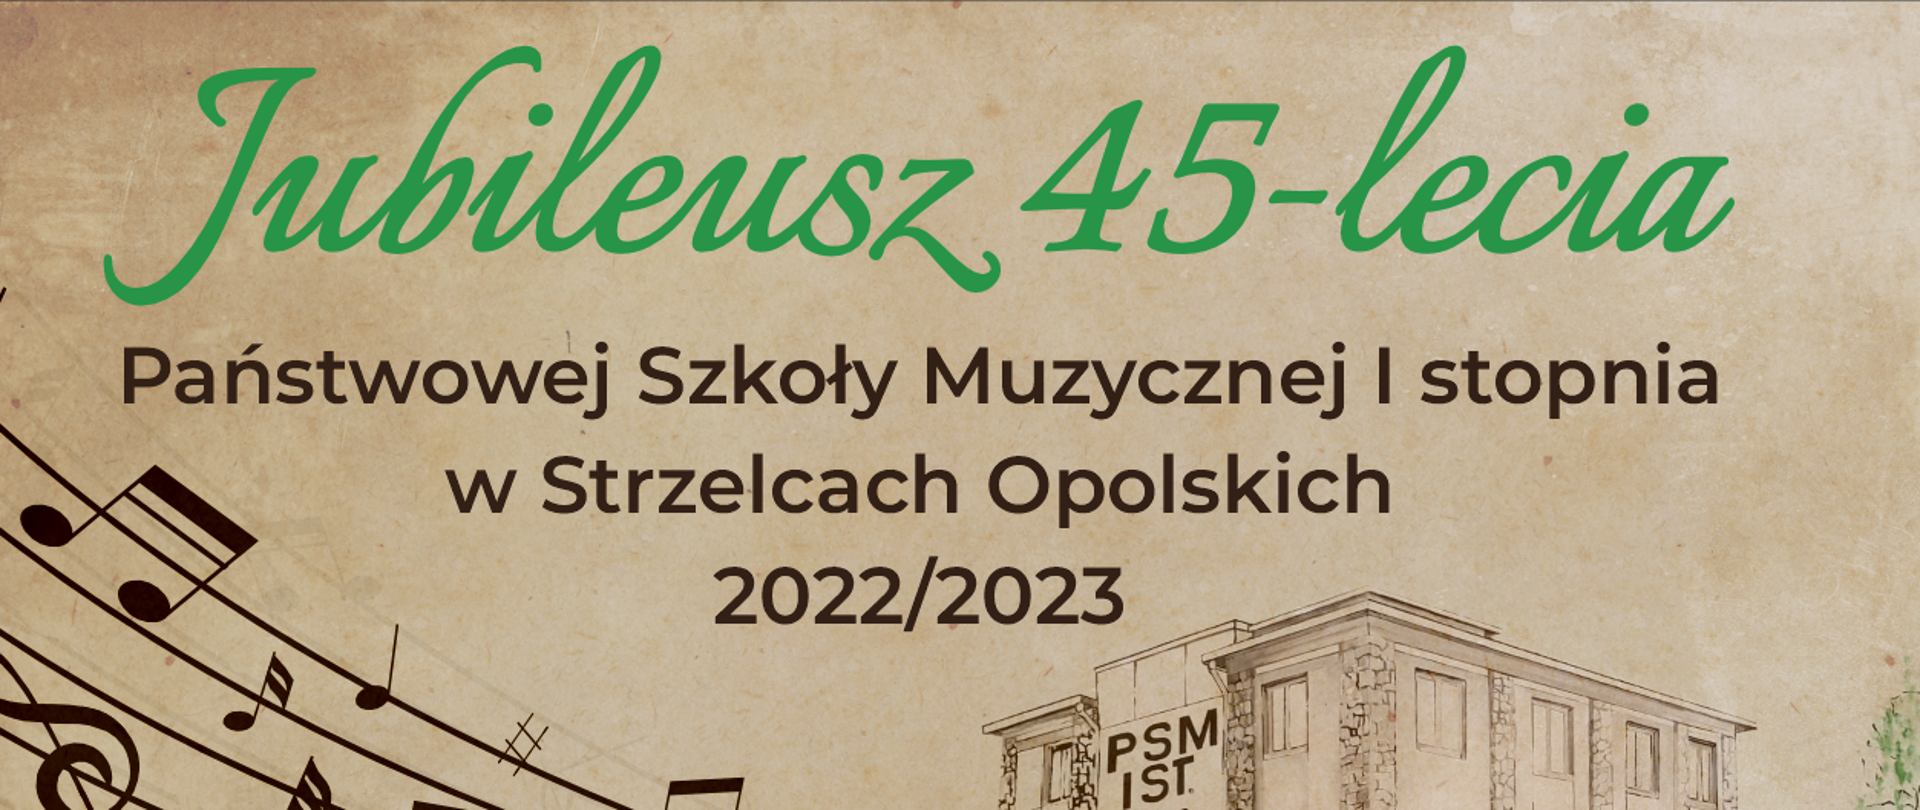 Na beżowym tle plakat dotyczący jubileuszu 45-lecia PSM w Strzelcach Opolskich. Po lewej stronie znaki muzyczne na pięciolinie wychodzące z budynku szkoły, który znajduje sie po prawej stronie. Przy budynku drzewo.